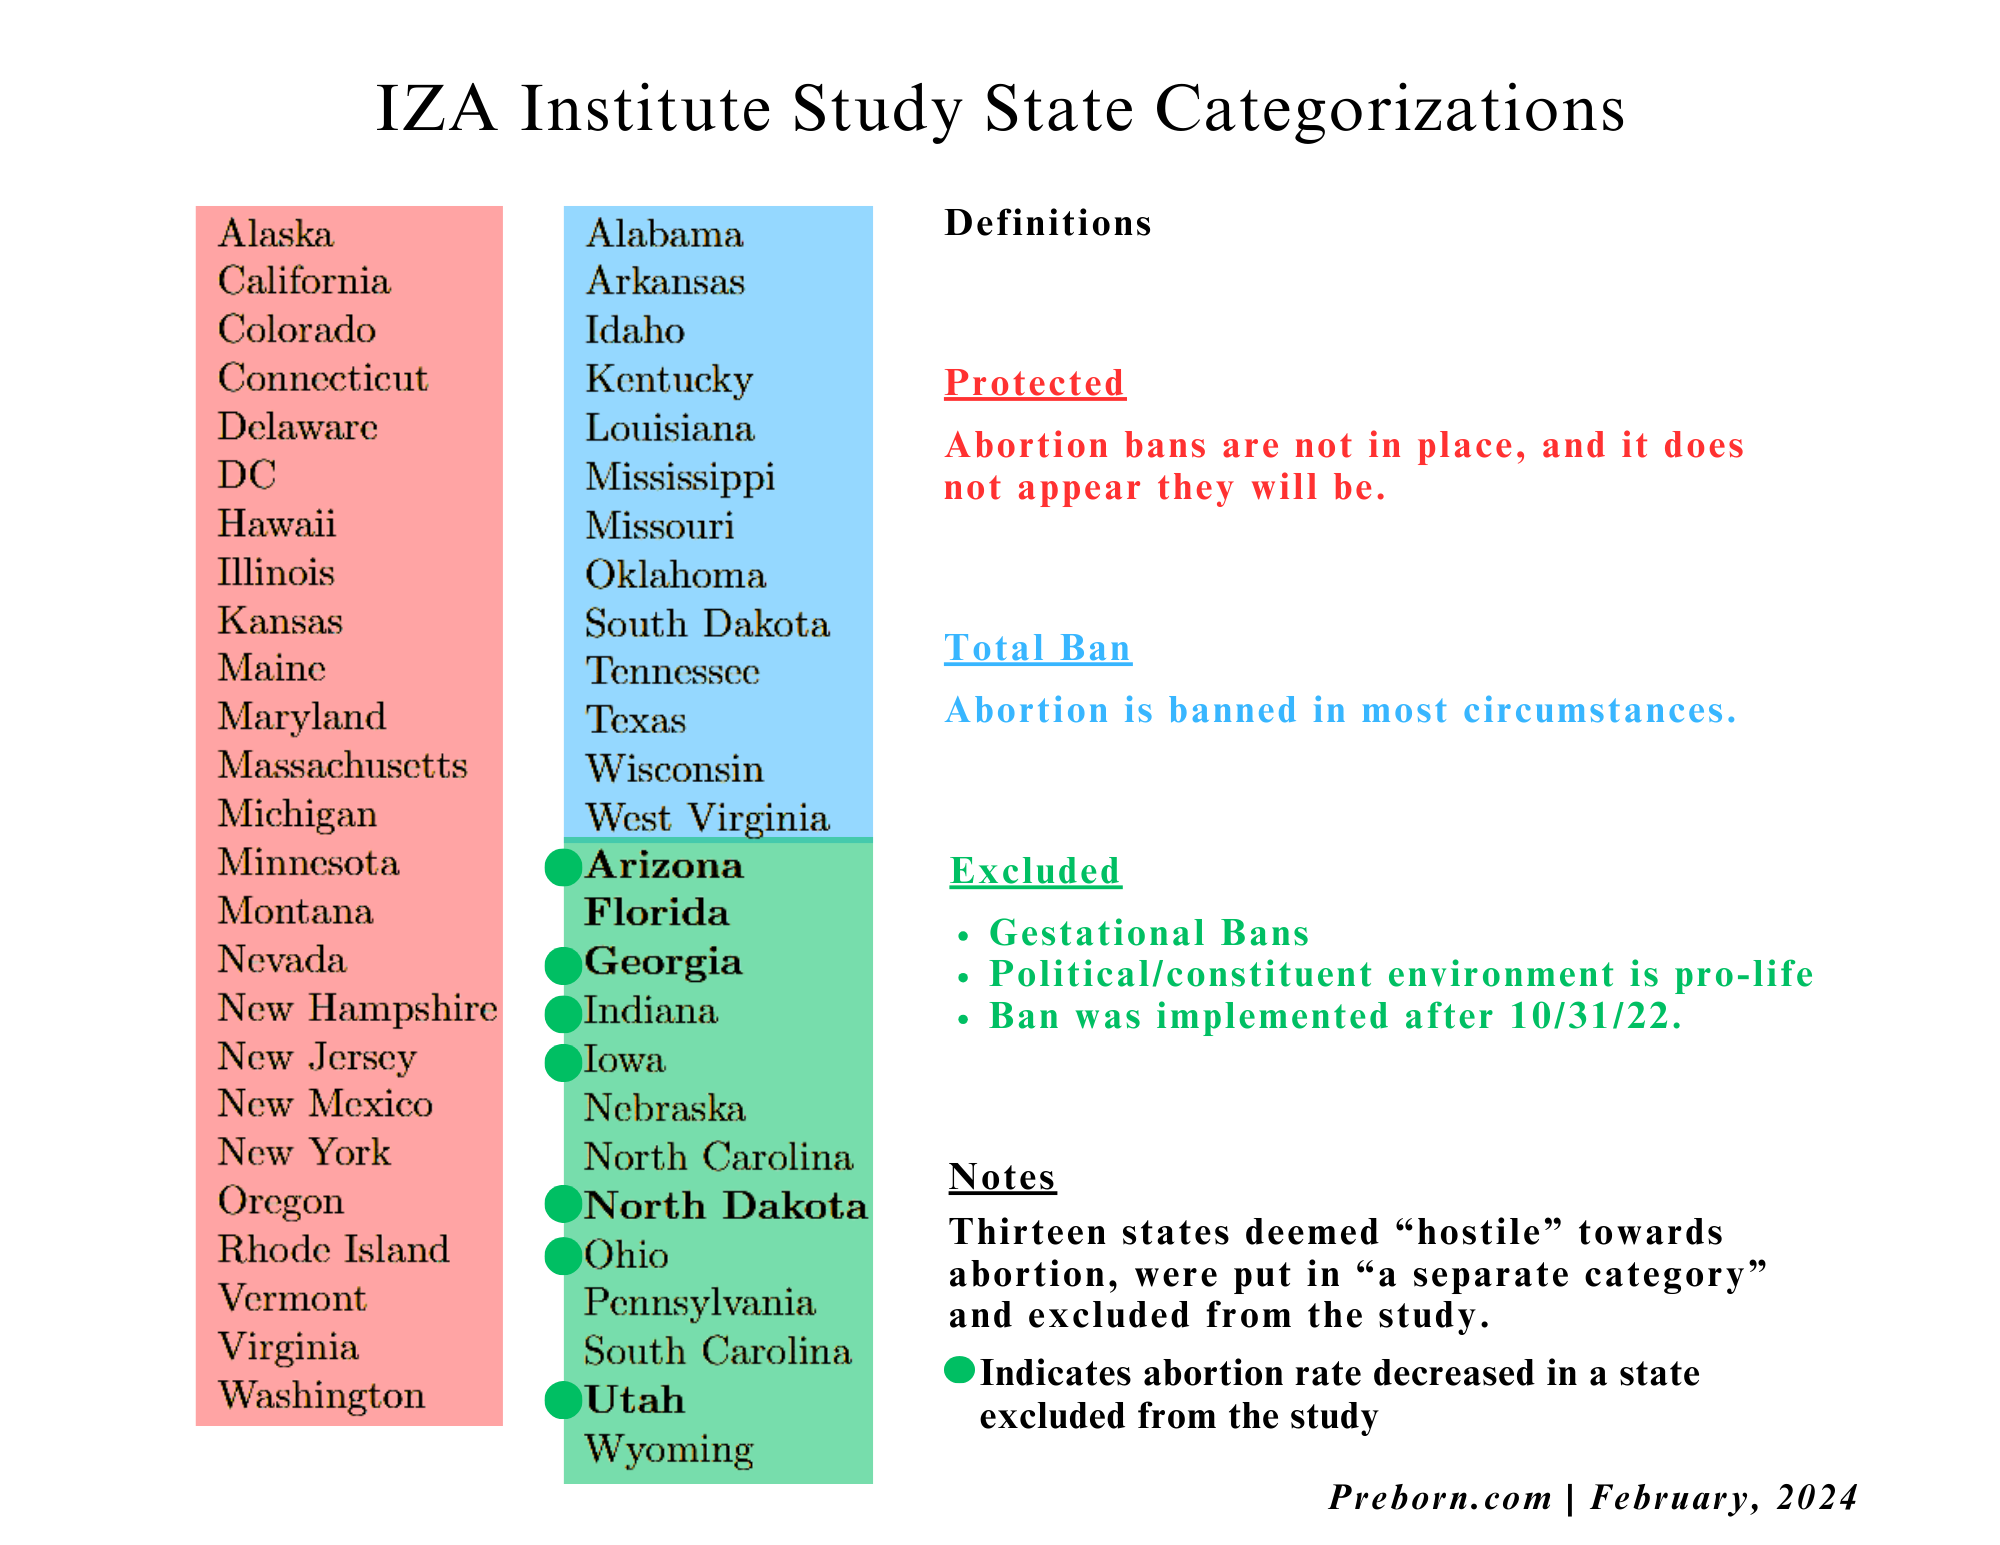 IZA Institute categories